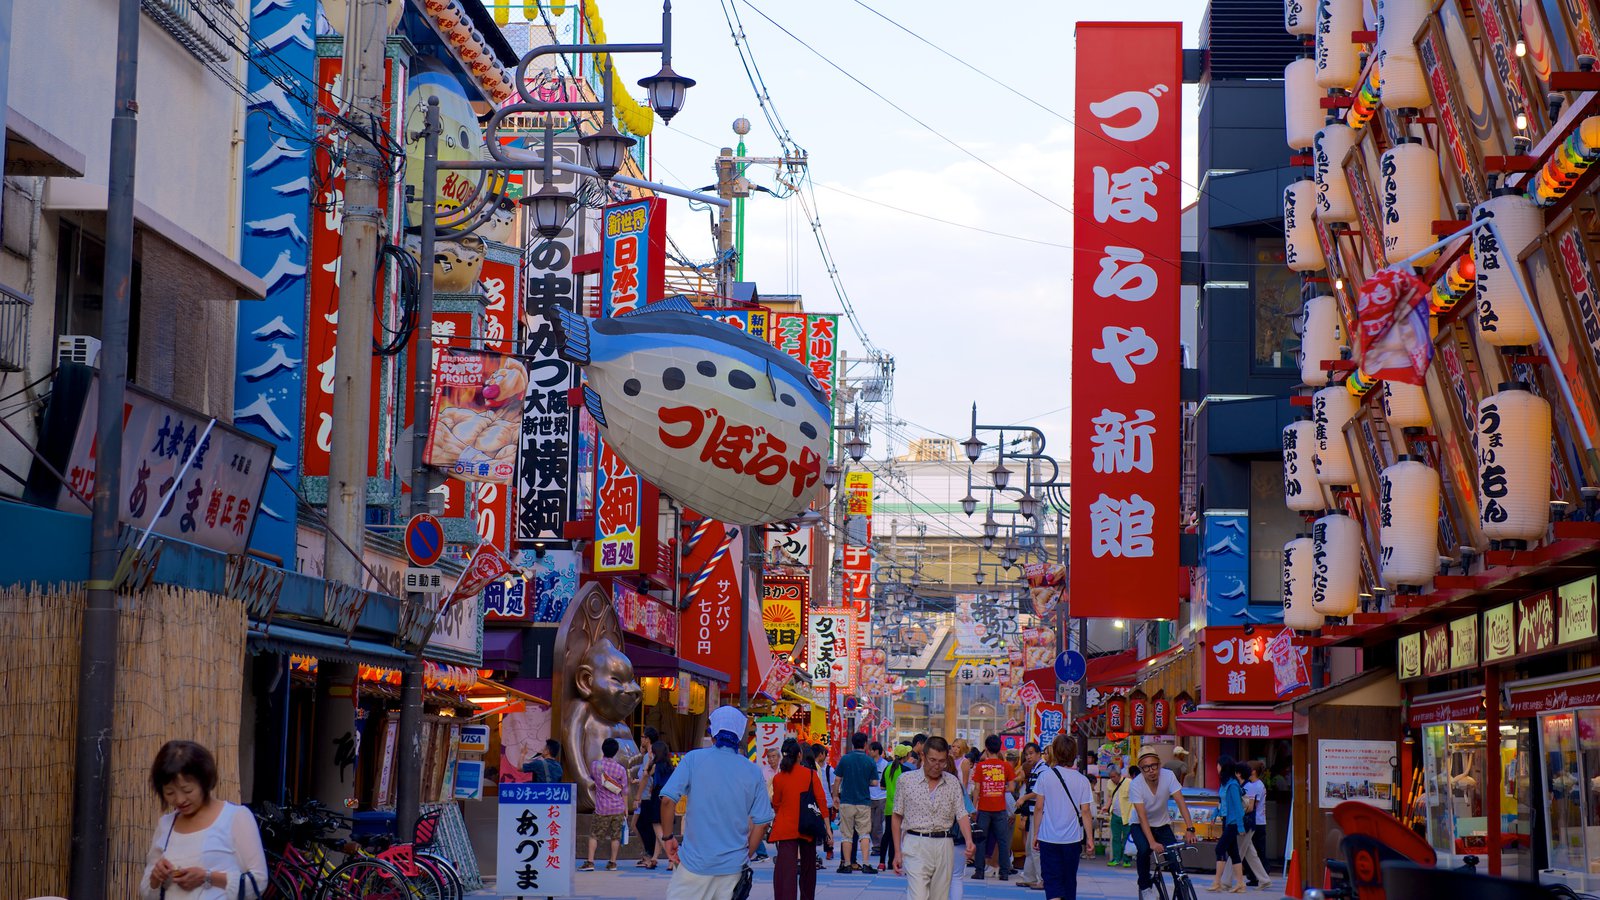 属于大阪知名的繁华购物圈,还有大阪美食的起源地新世界商业街及通天